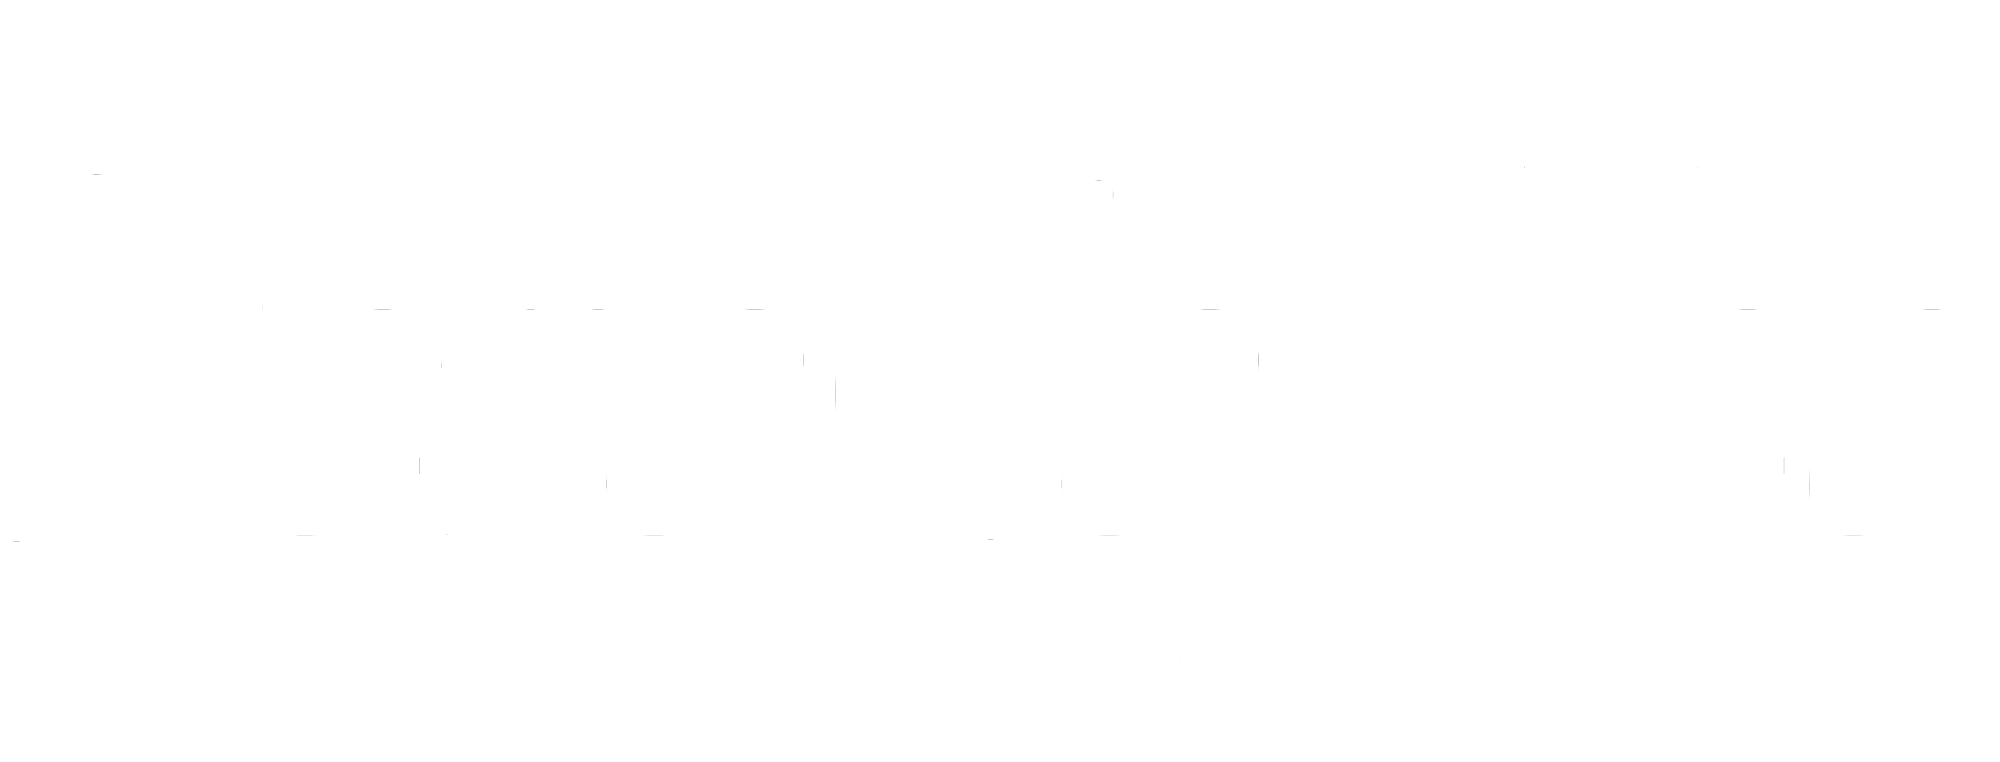 NeroCoffee - интернет магазин кофе и чая